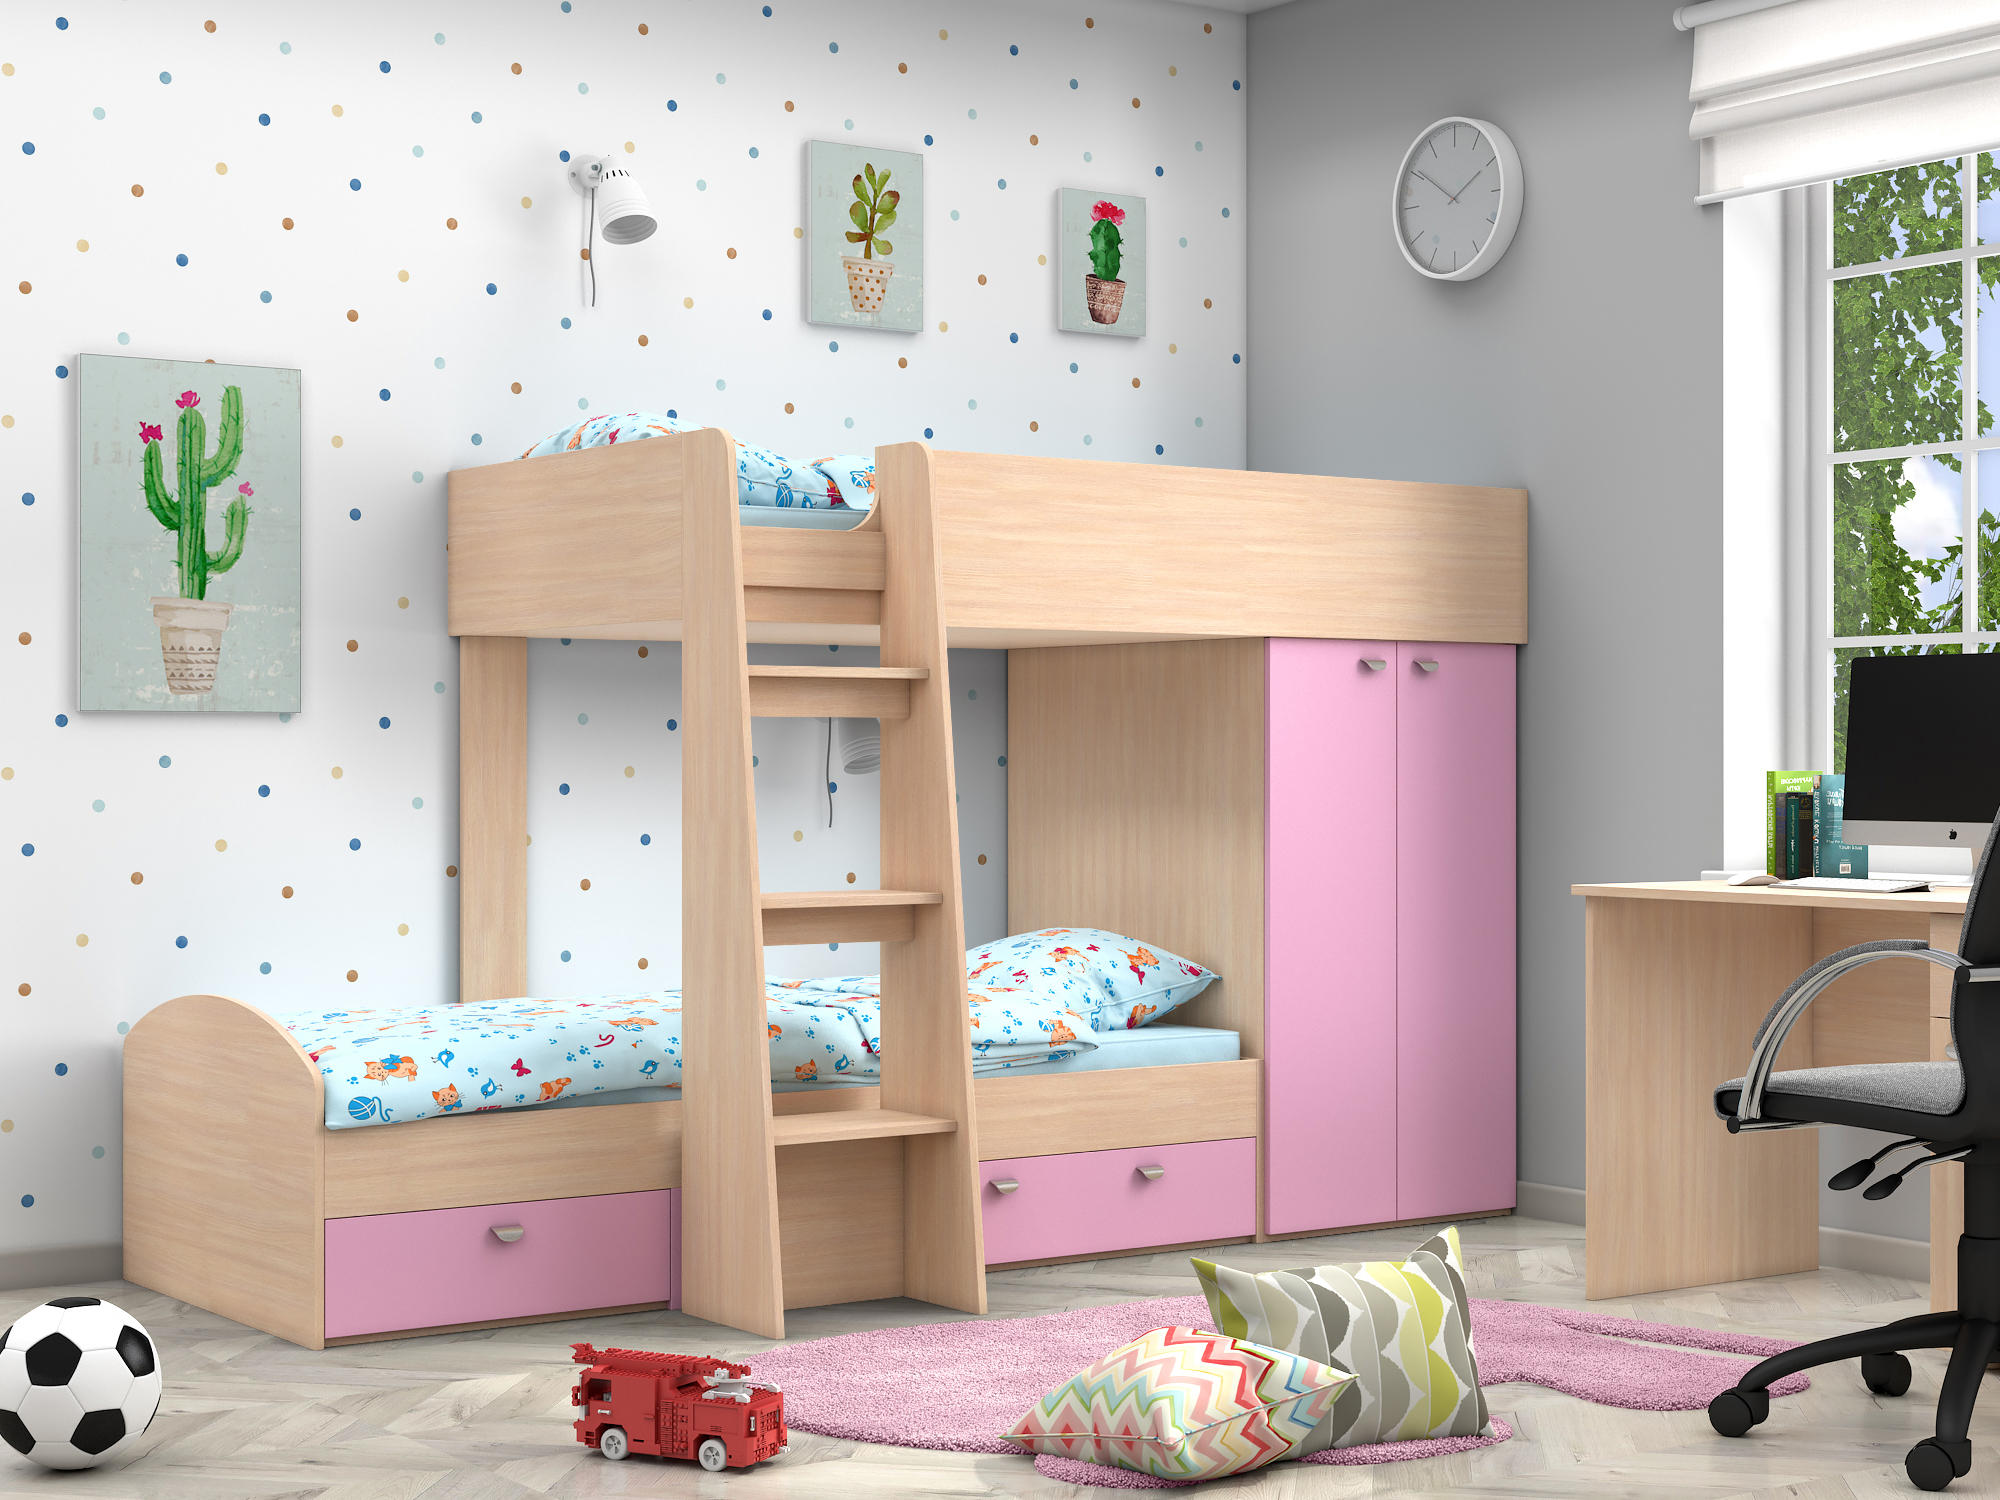 Двухъярусная кровать Golden Kids-2 (90х200) Розовый, Белый, Бежевый, ЛДСП двухъярусная кровать golden kids 2 90х200 бежевый белый лдсп